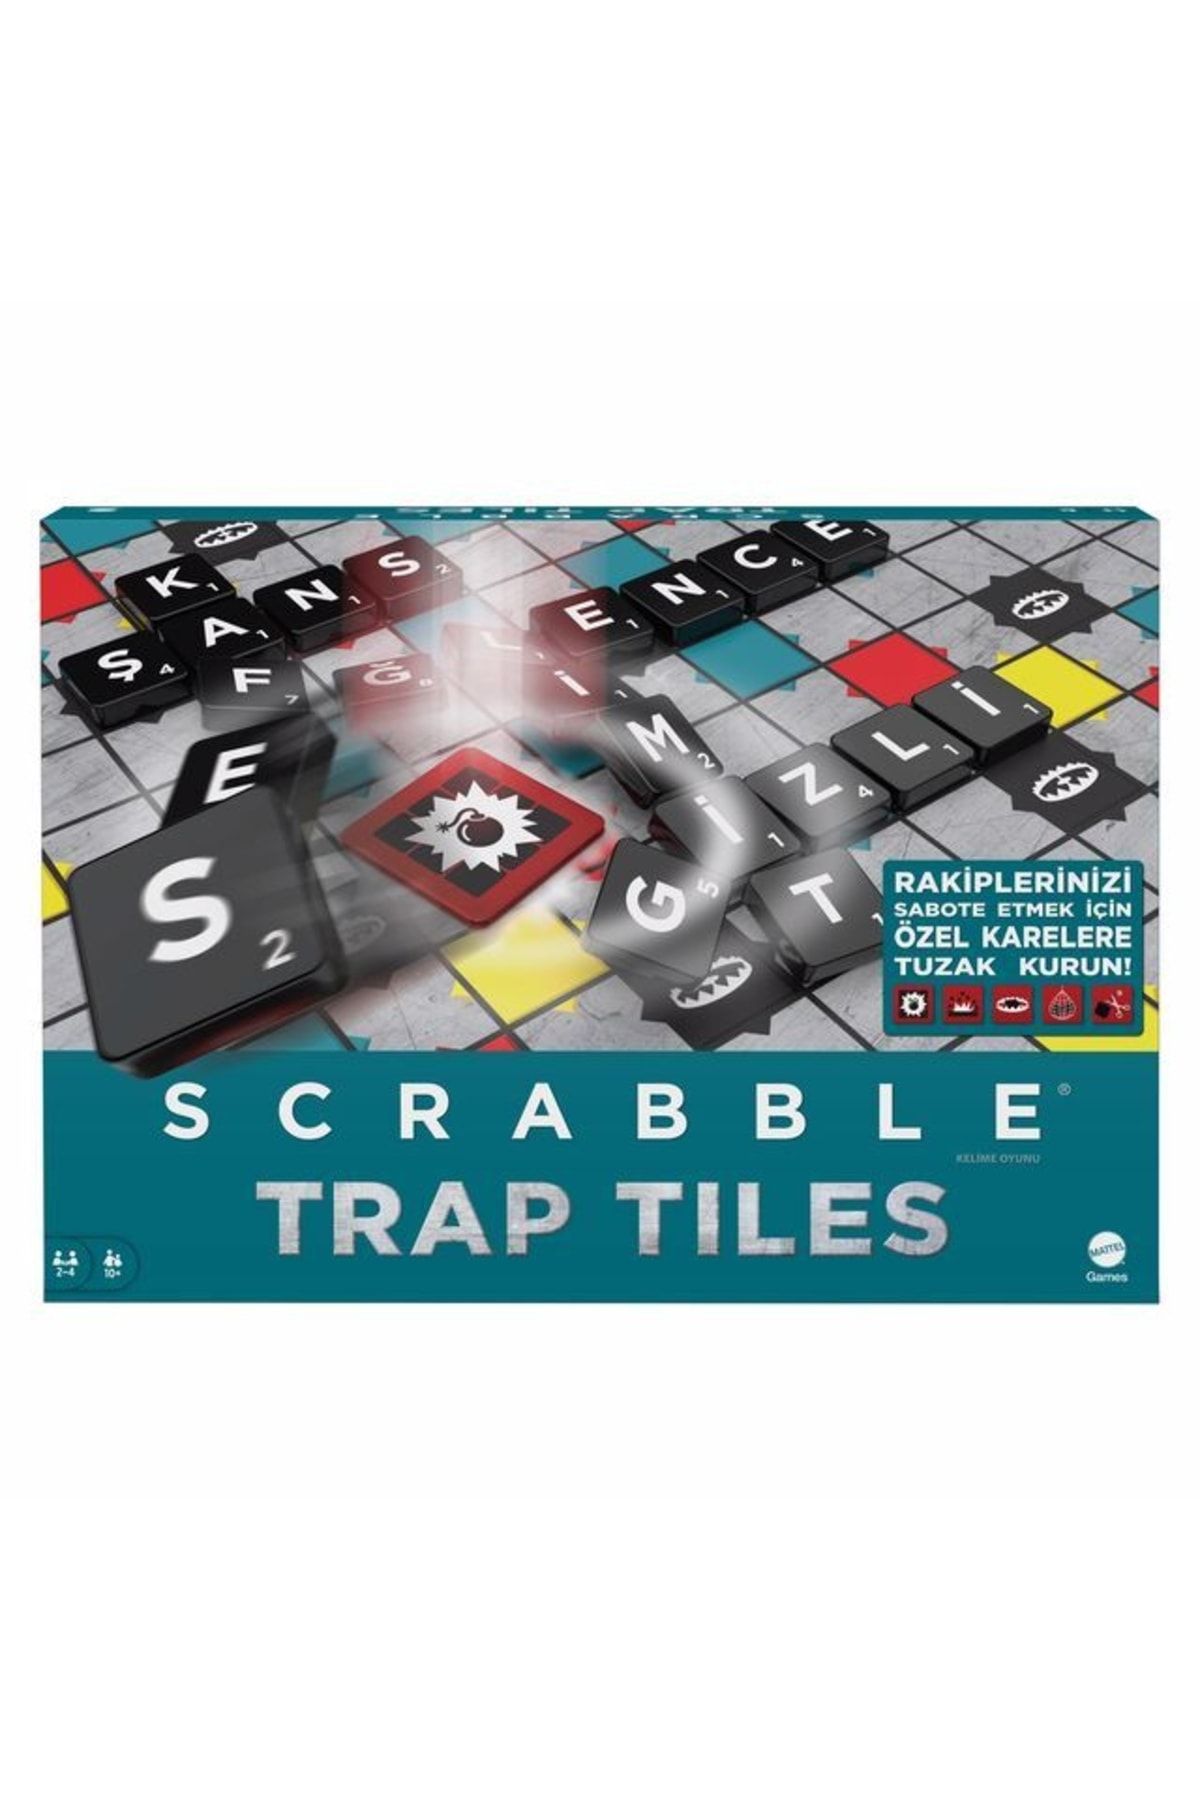 Scrabble Akdenizpos Co01 Scrabble Trap Tiles Türkçe (Yeni)